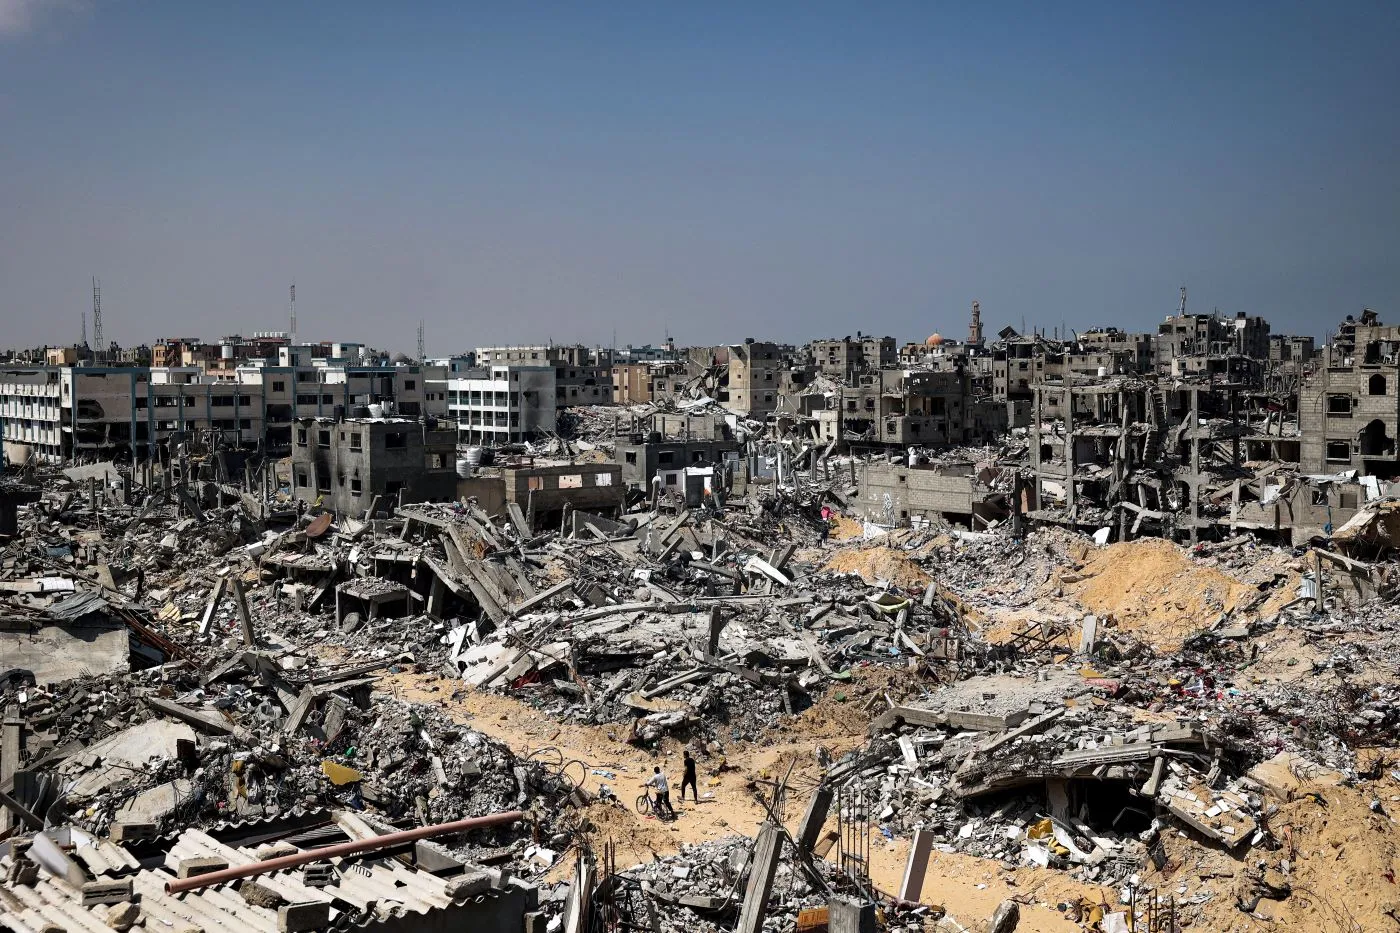 Sekitar 90 persen dari sekitar 4.000 bangunan yang terletak di sepanjang perbatasan timur Gaza dengan Israel telah hancur atau rusak, menurut analisis awal citra satelit dari Pusat Satelit PBB (UNOSAT) yang dirilis pada hari Senin. (AFP)